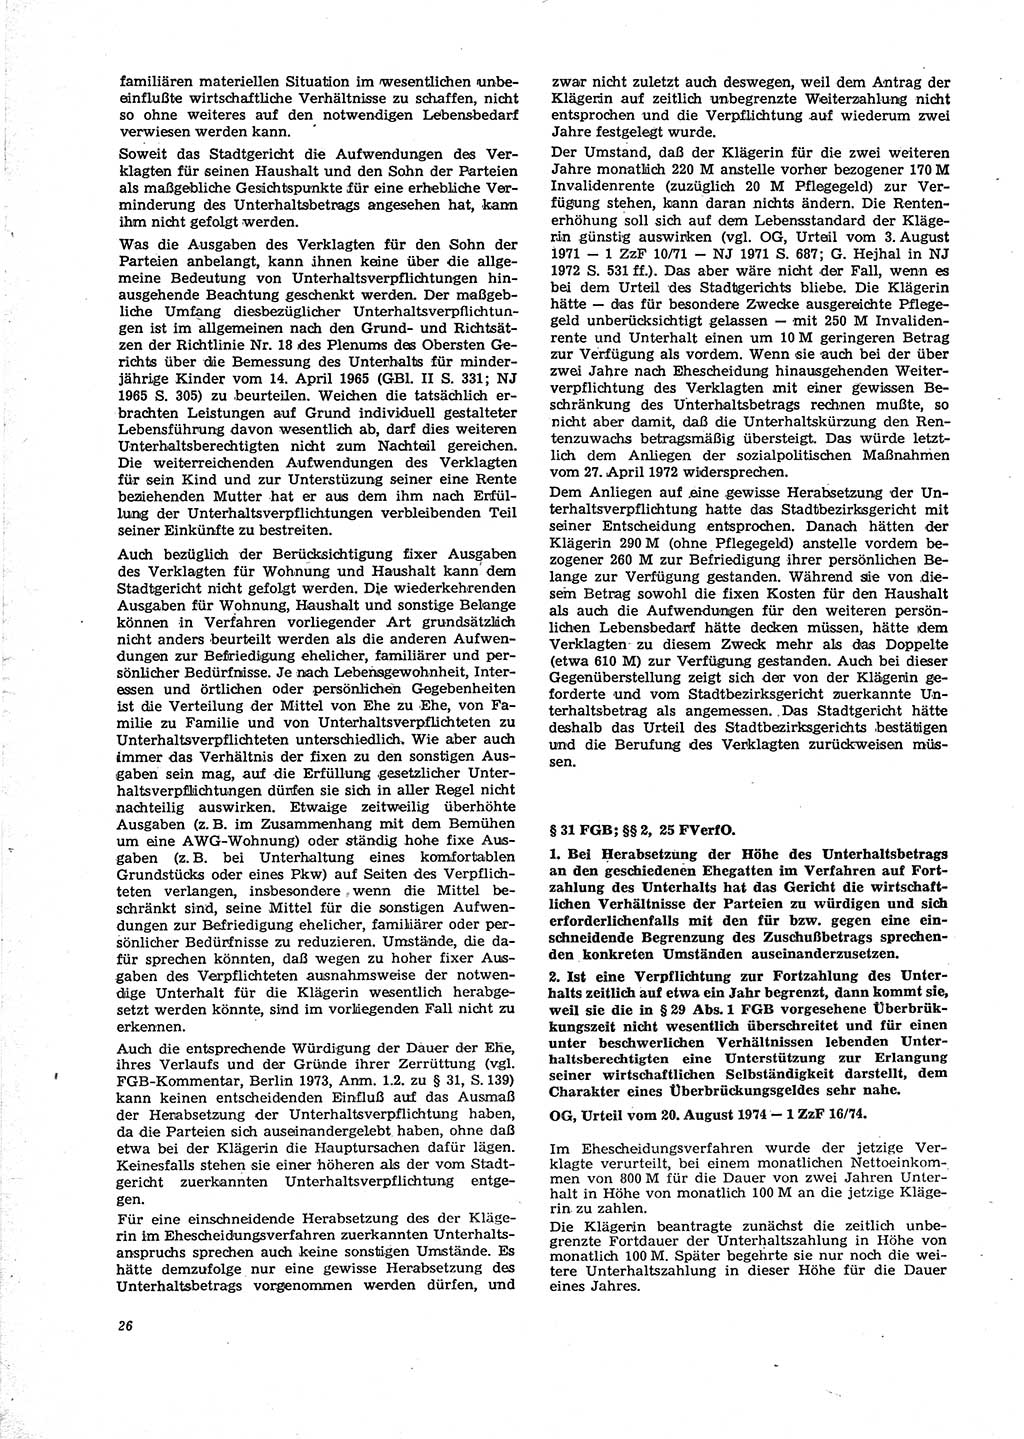 Neue Justiz (NJ), Zeitschrift für Recht und Rechtswissenschaft [Deutsche Demokratische Republik (DDR)], 29. Jahrgang 1975, Seite 26 (NJ DDR 1975, S. 26)